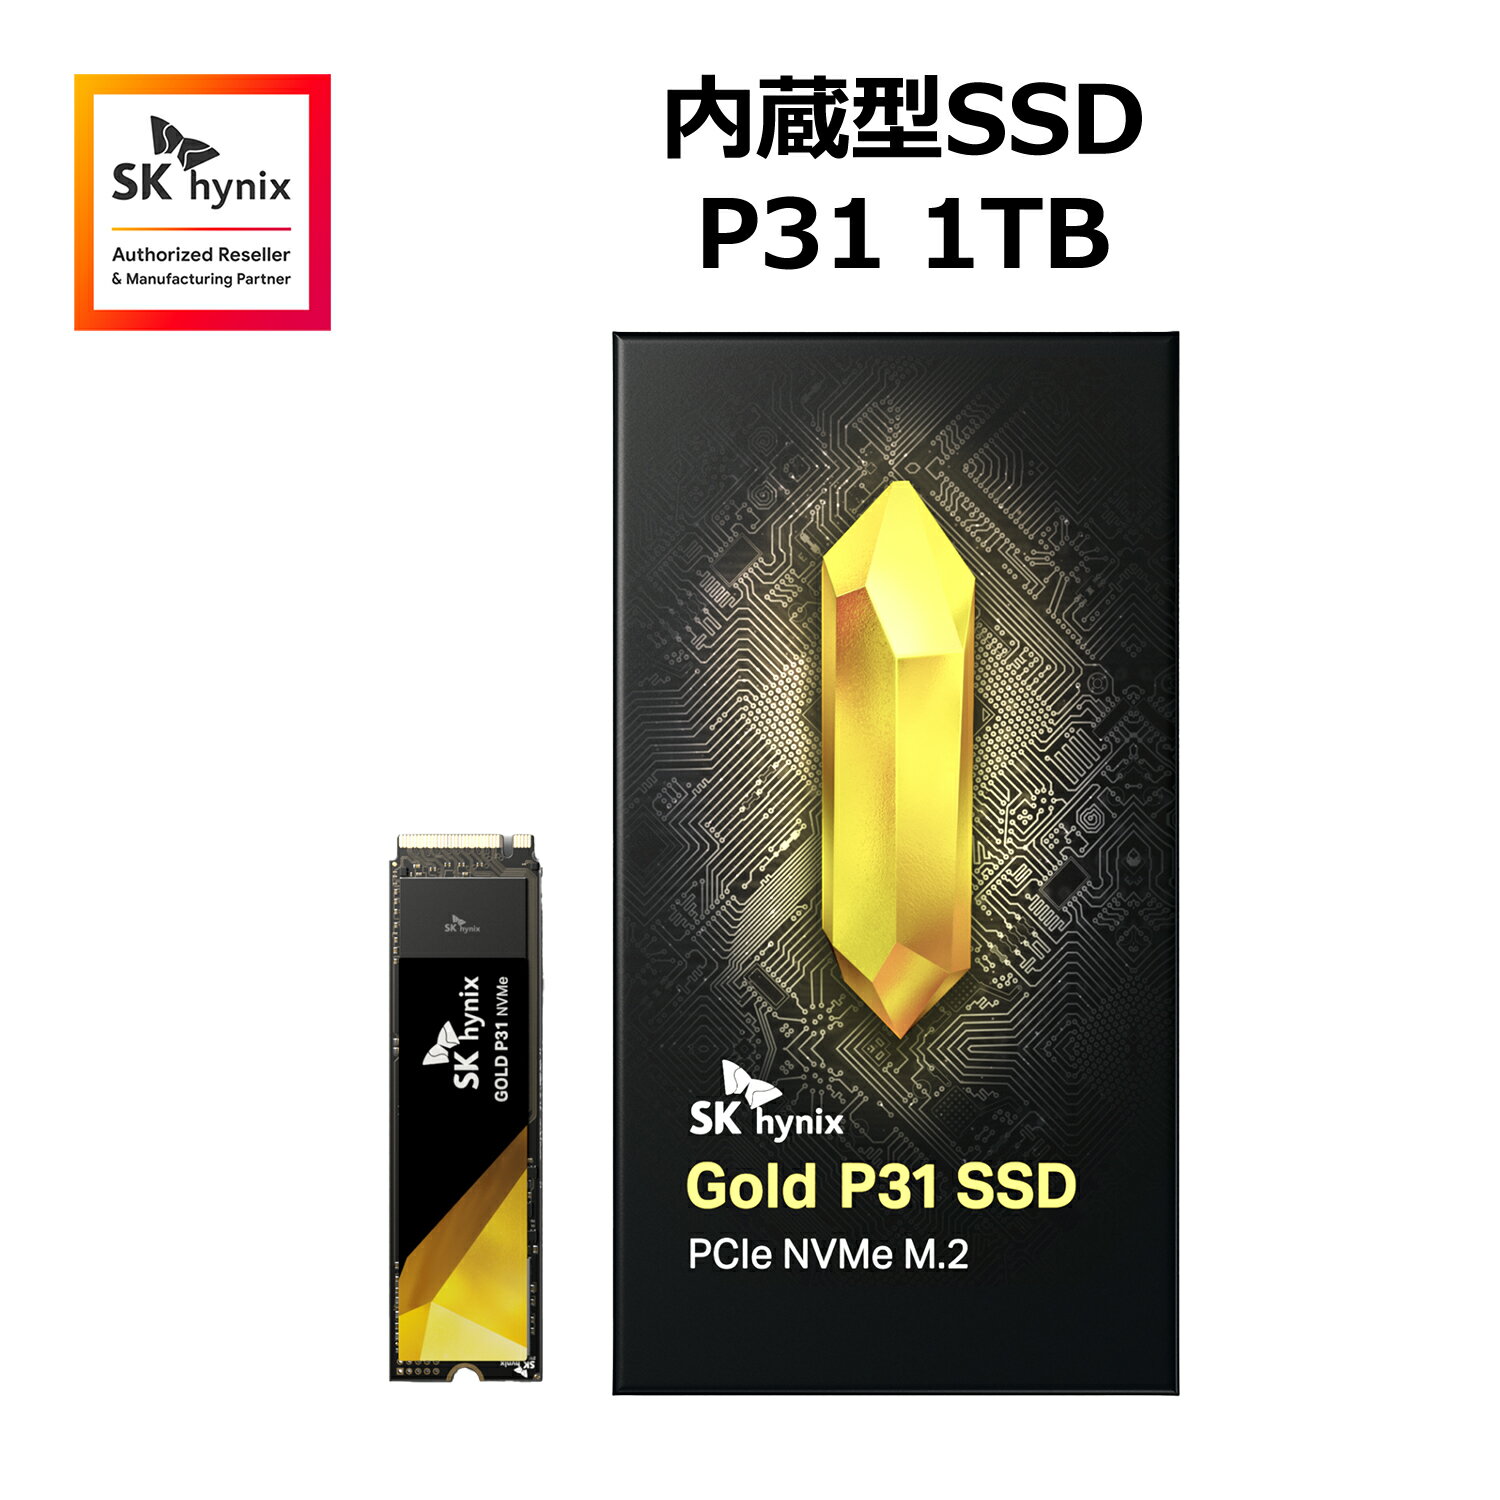 SK hynix Gold P31 1TB SSD PCIe NVMe Gen3 M.2 2280  SSD ǂݍݑxő 3500MB b M.2 SSD TBW :750TB 128w NANDtbV [J[ۏ5N SHGP31-1000GM-2